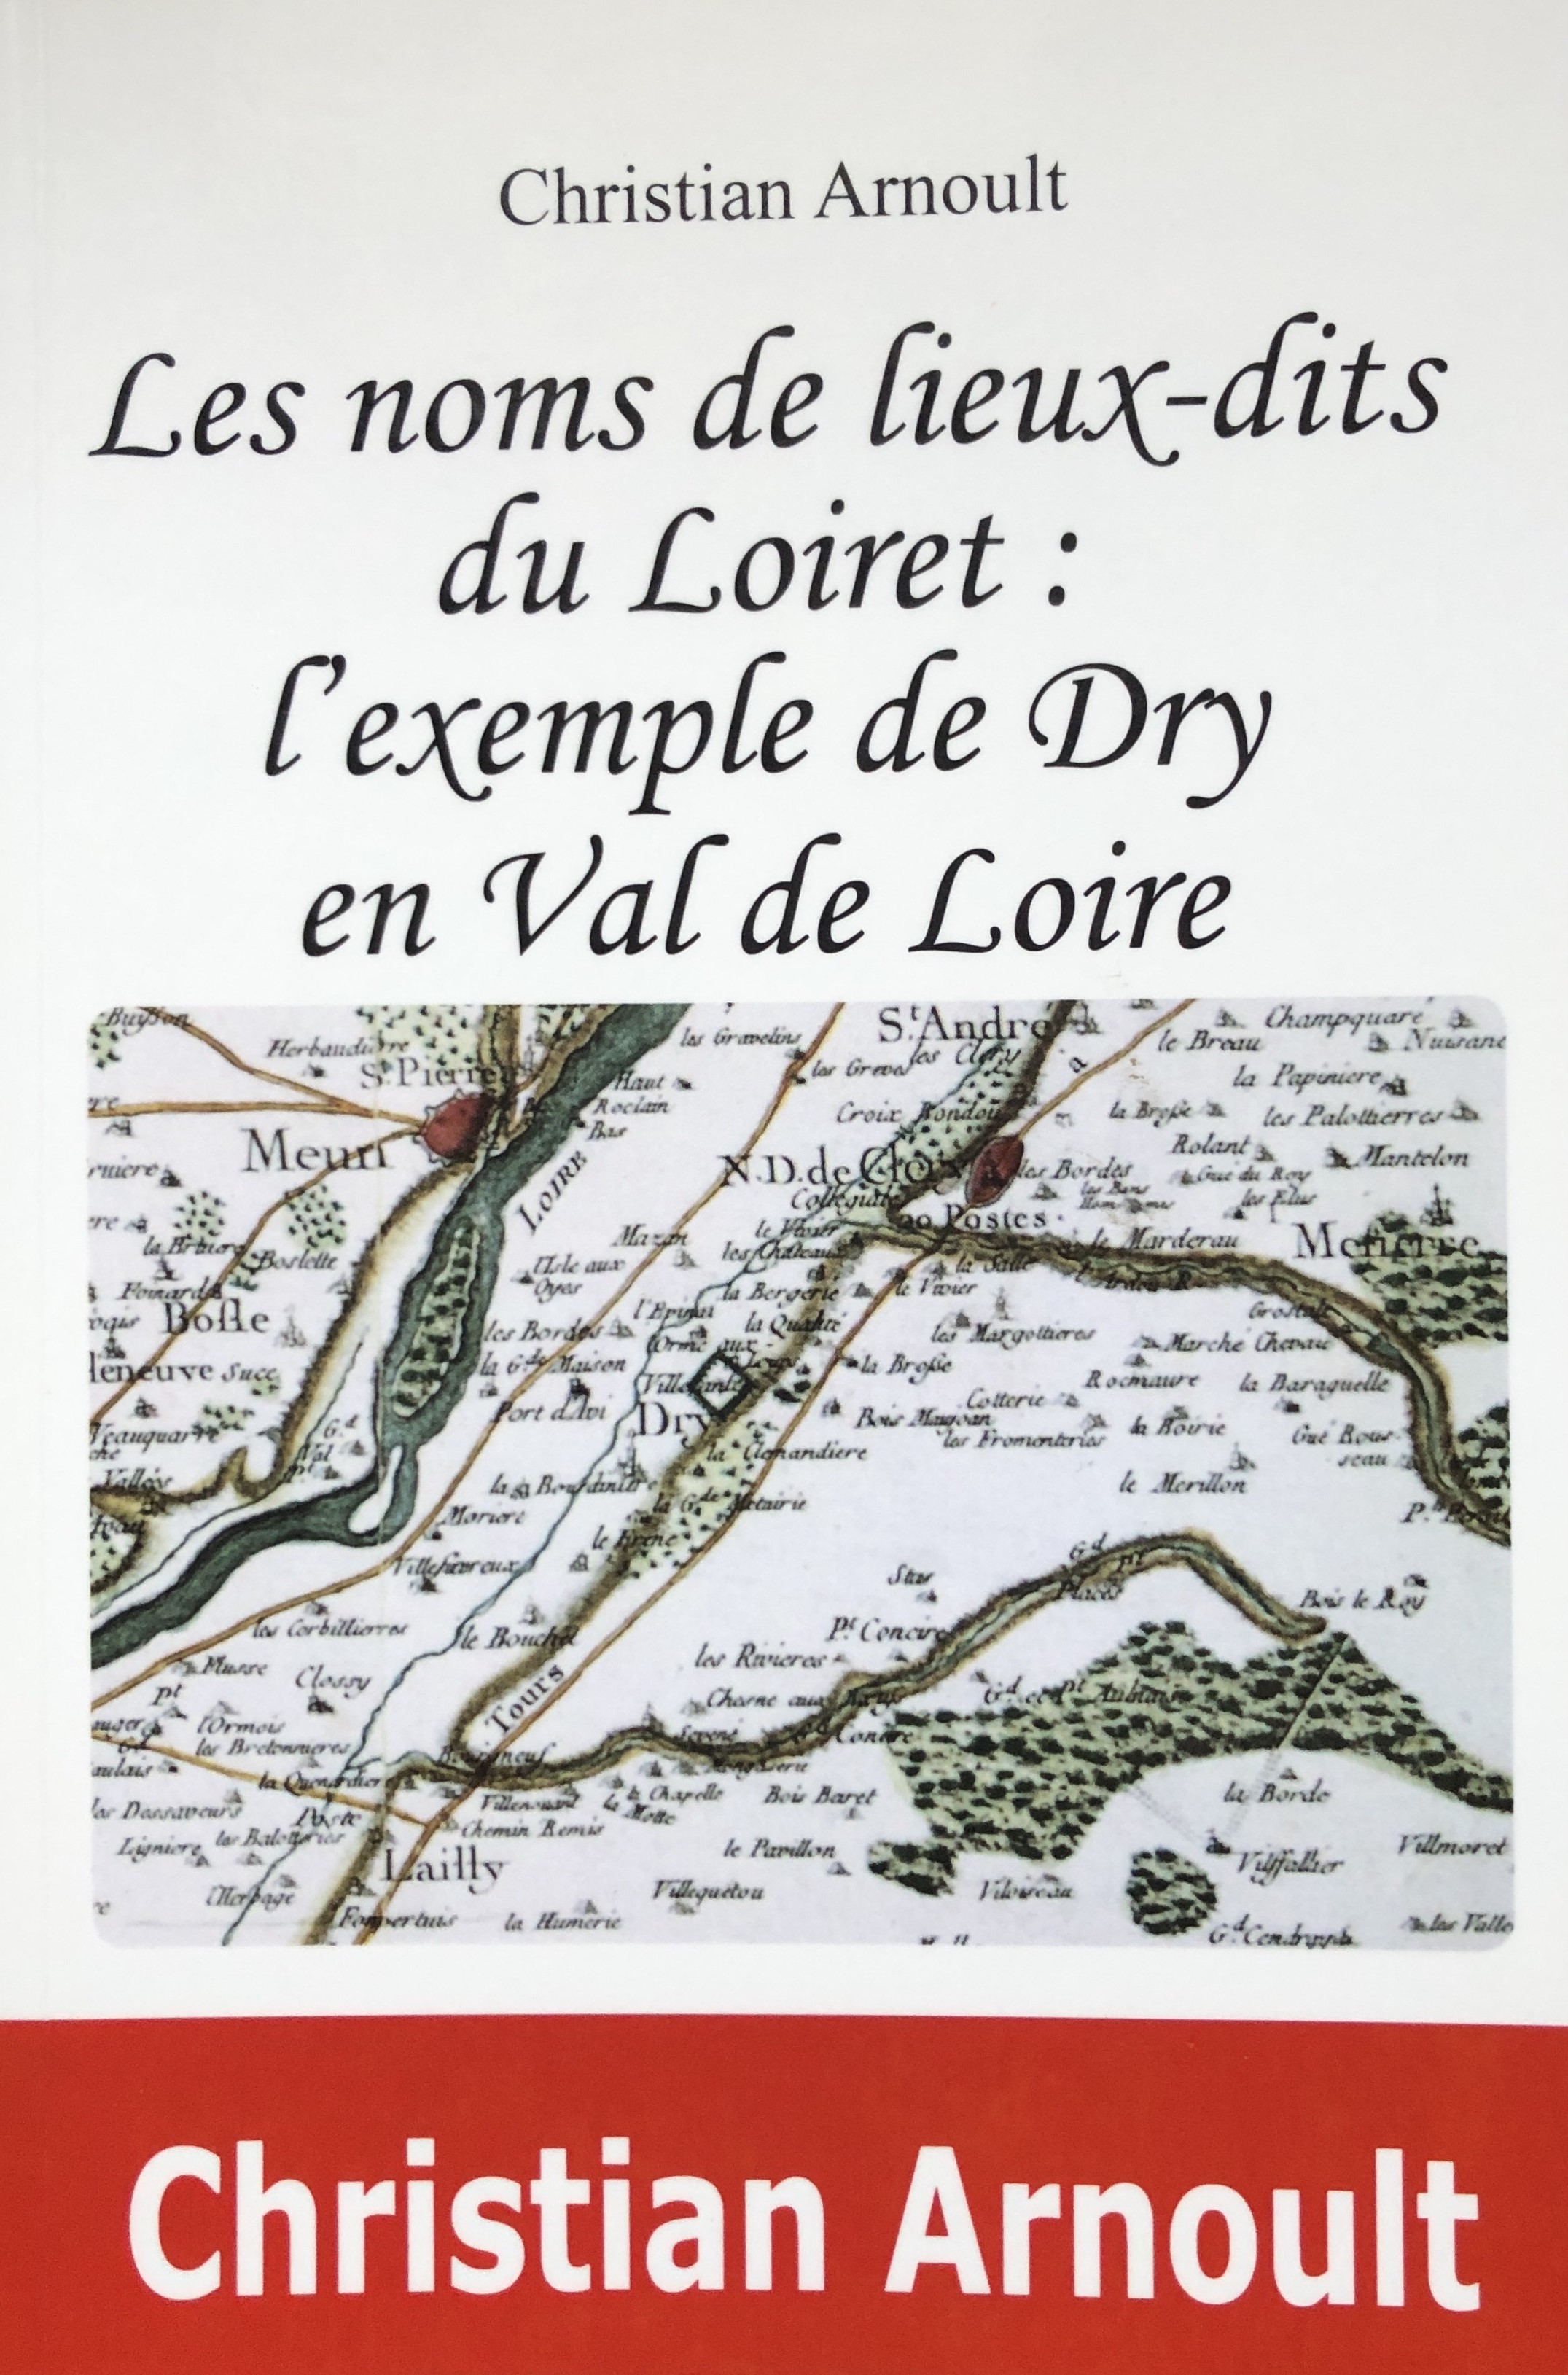 ARNOULT Les noms de lieux dits du Loiret IMG_3076